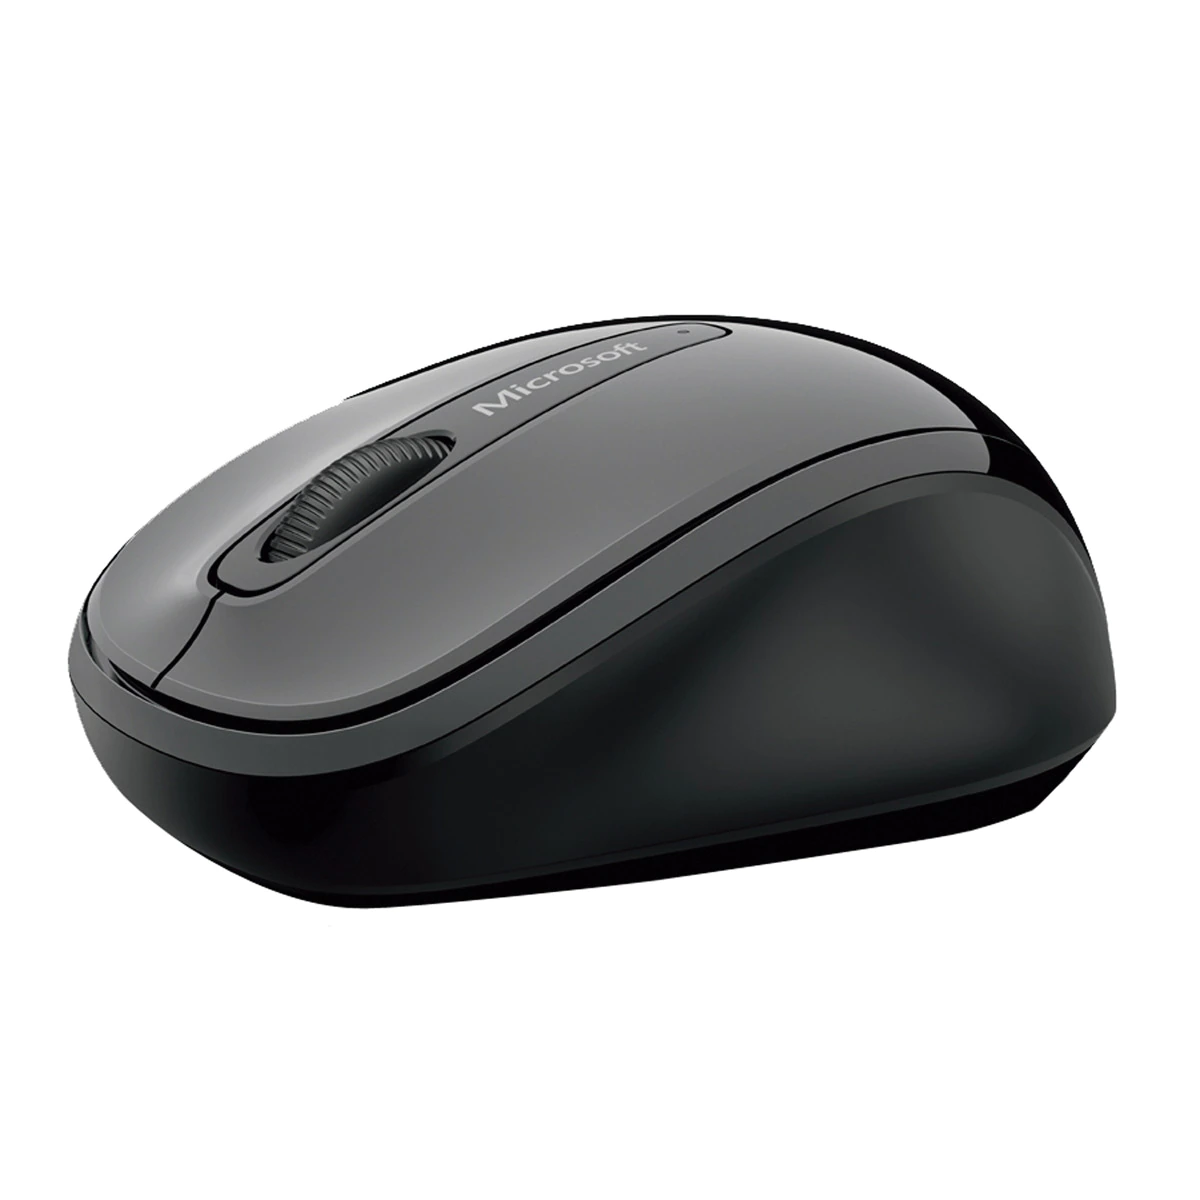 Ratón inalámbrico Microsoft Mobile Mouse 3500